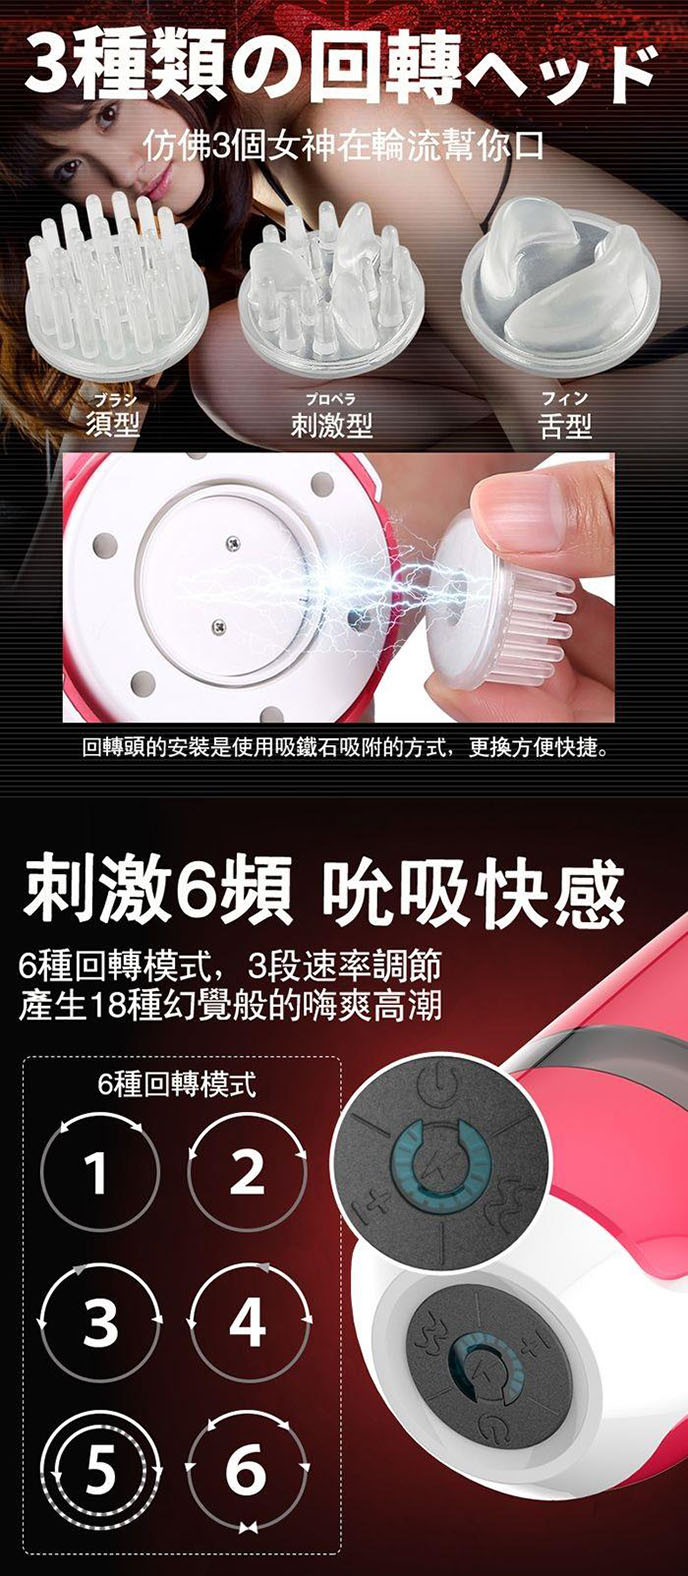 日本 RENDS VORTECH 龜太郎回轉龜頭刺激USB充電電動自慰器